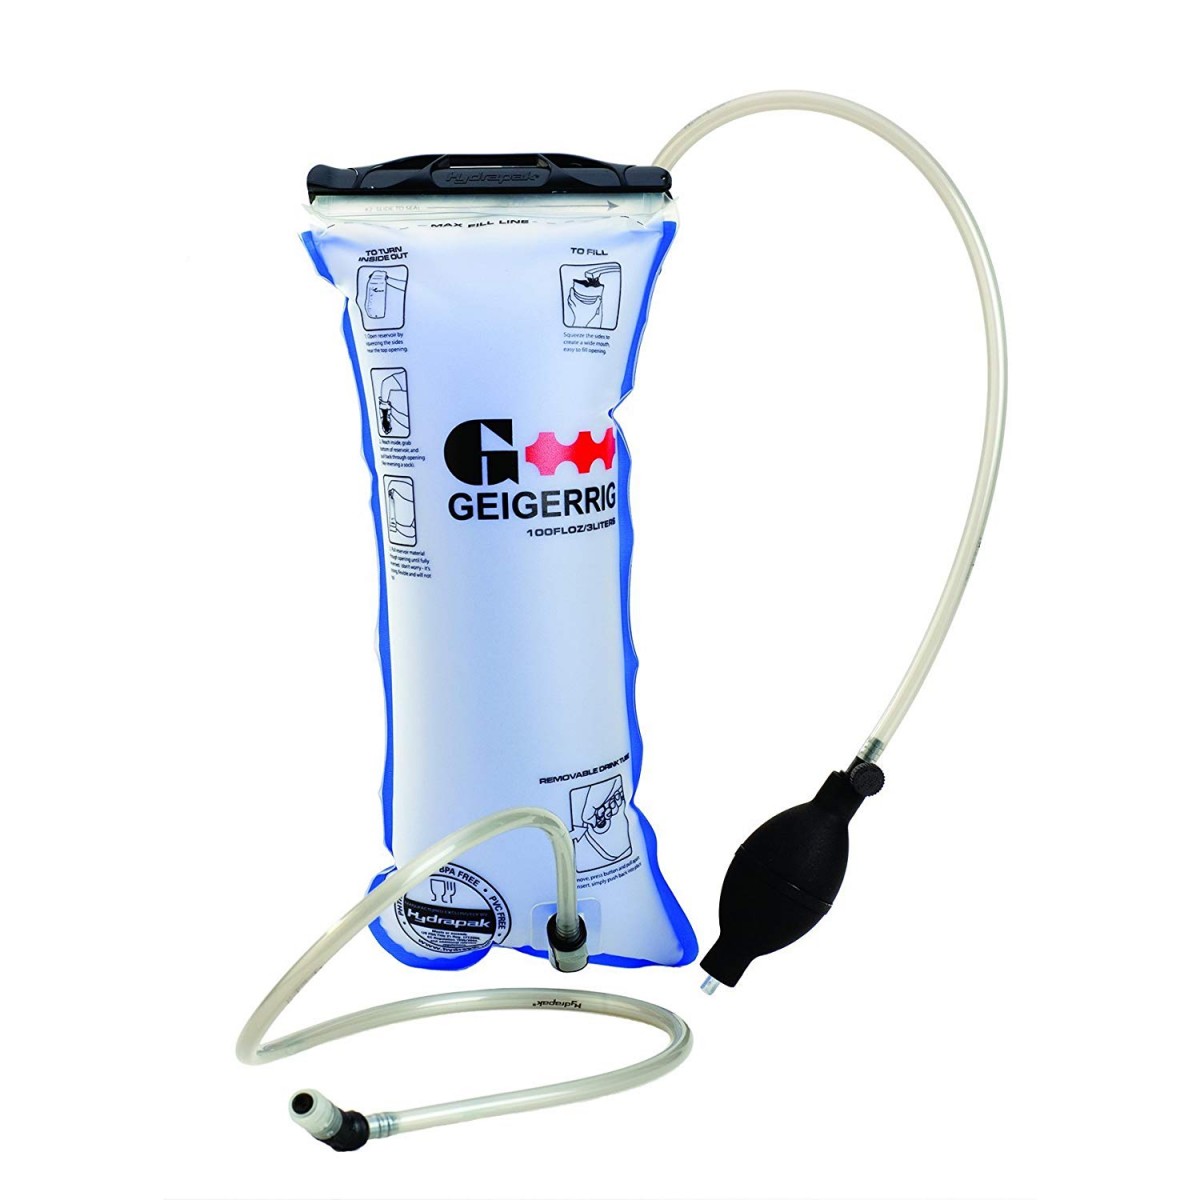 geigerrig hydration engine hydration bladder review